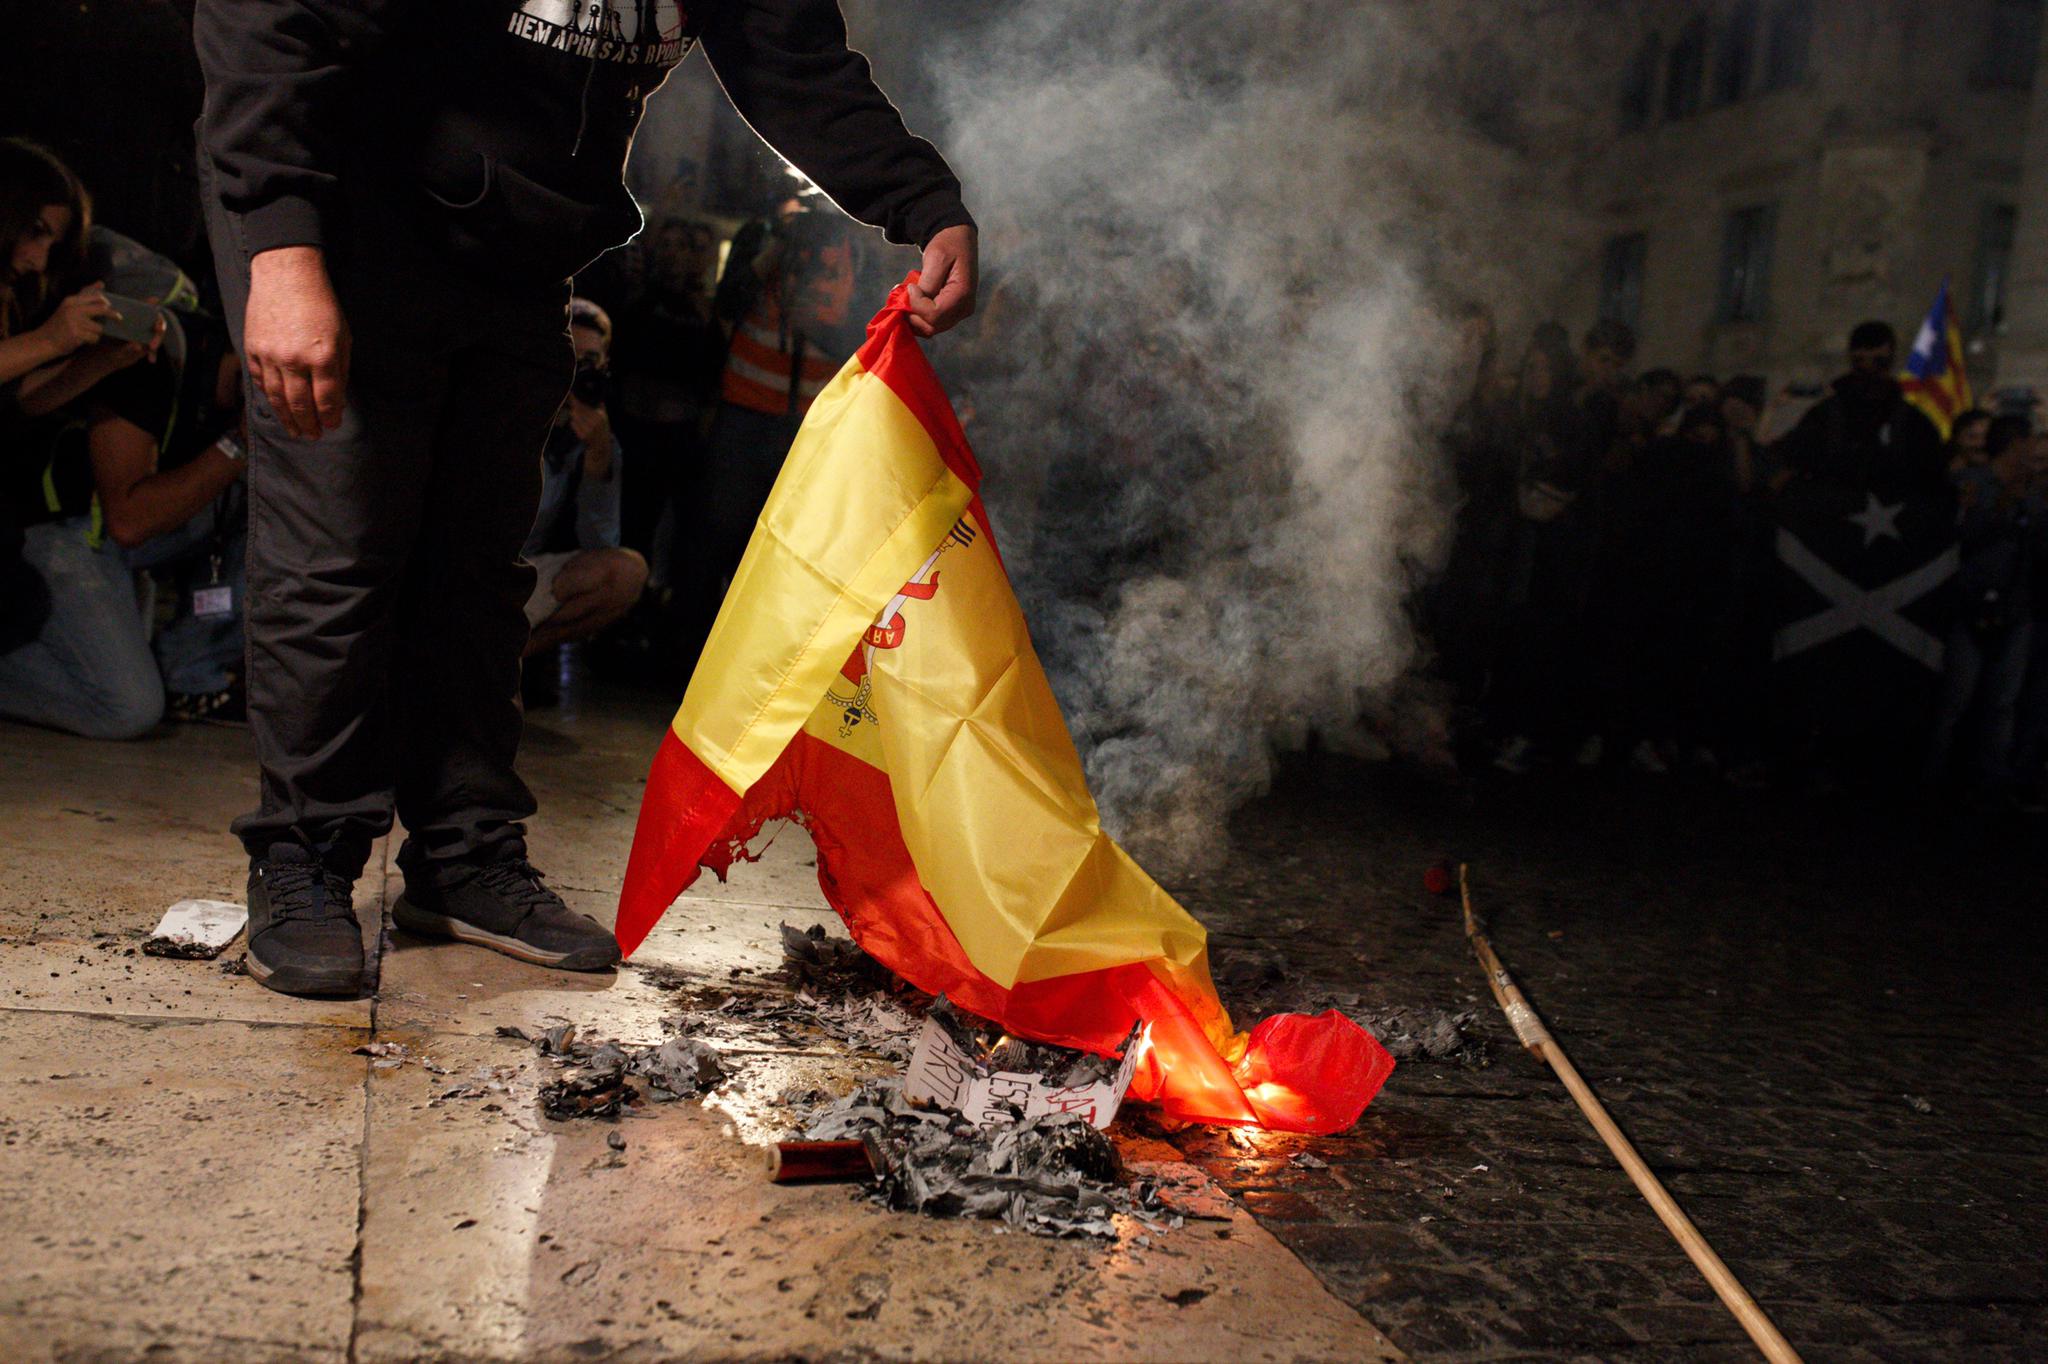 Arxiven la causa per cremar una bandera espanyola a Tarragona per l'1-O